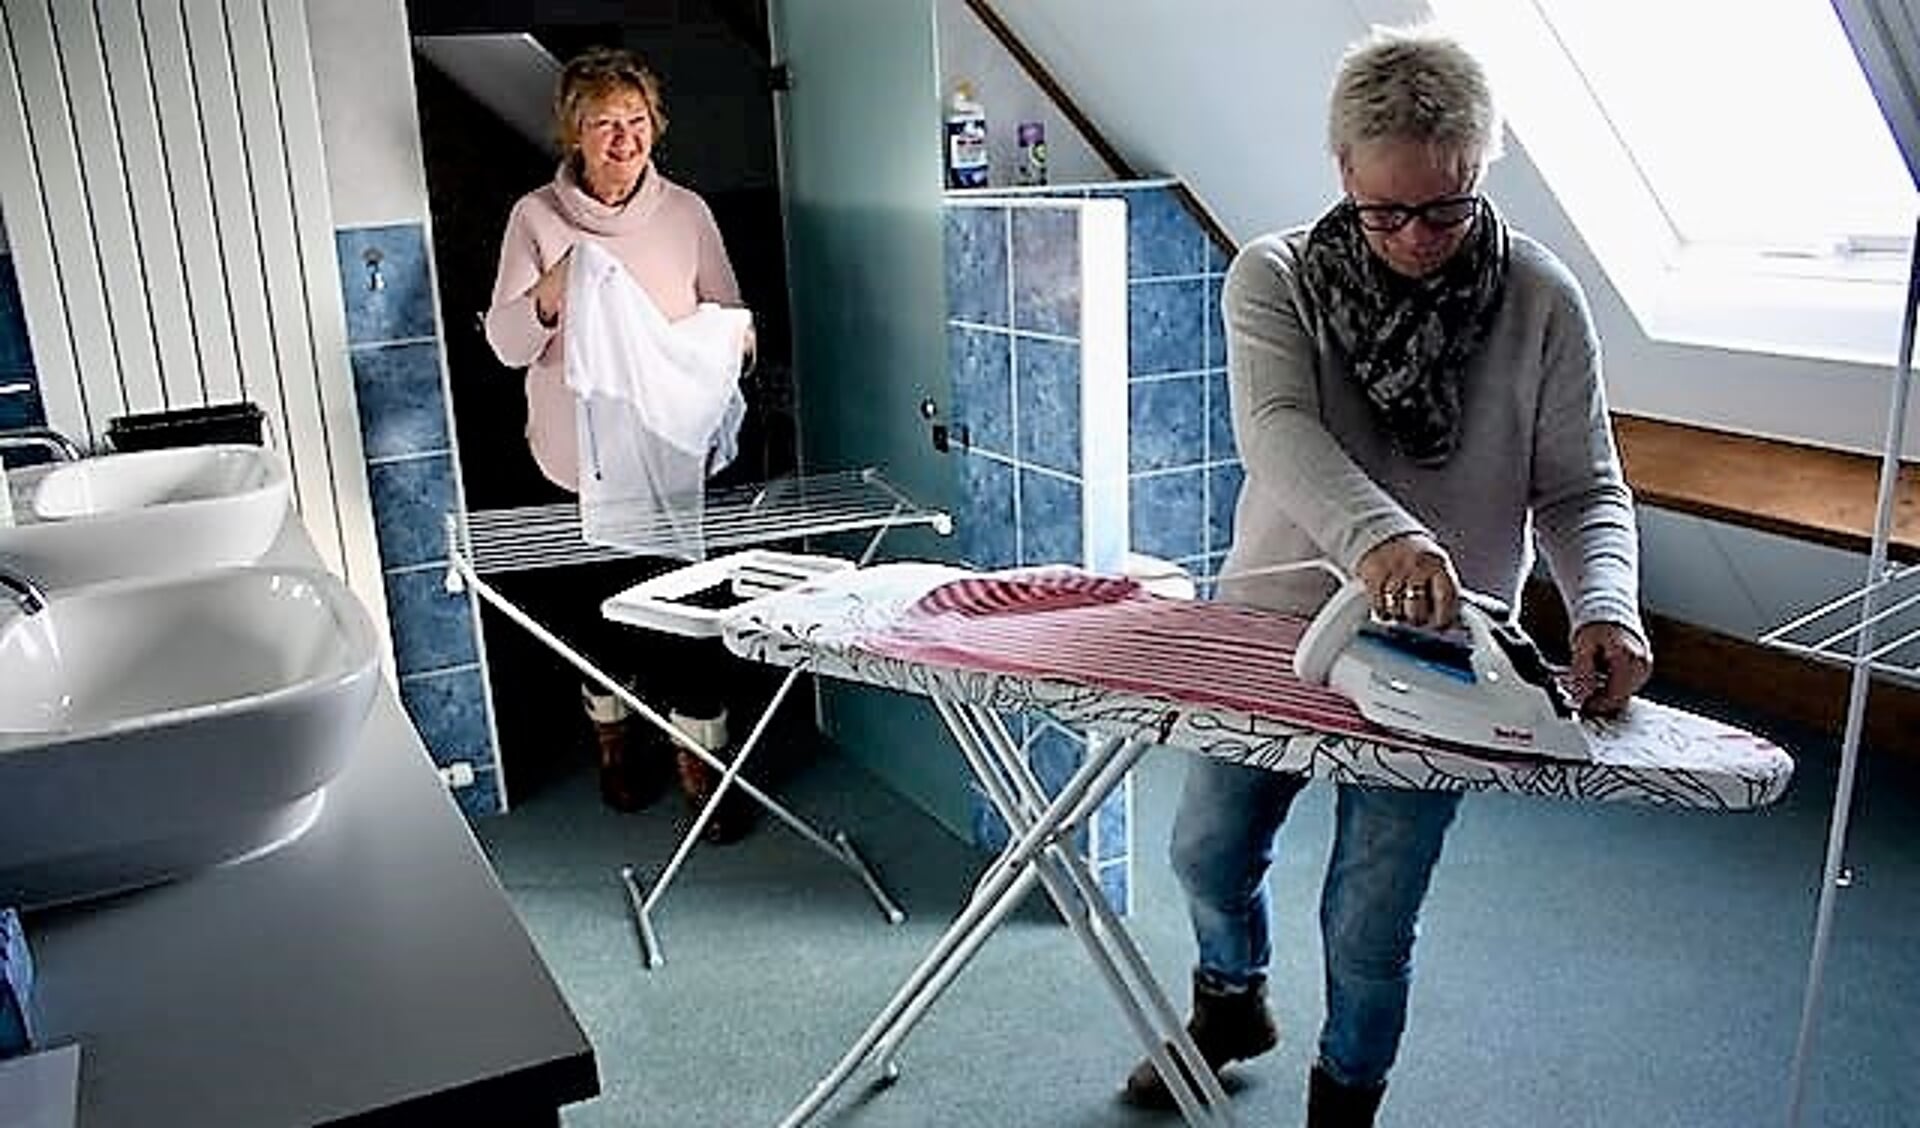  Anja Fikse en Gees Wezel in de waskamer van het hospice.